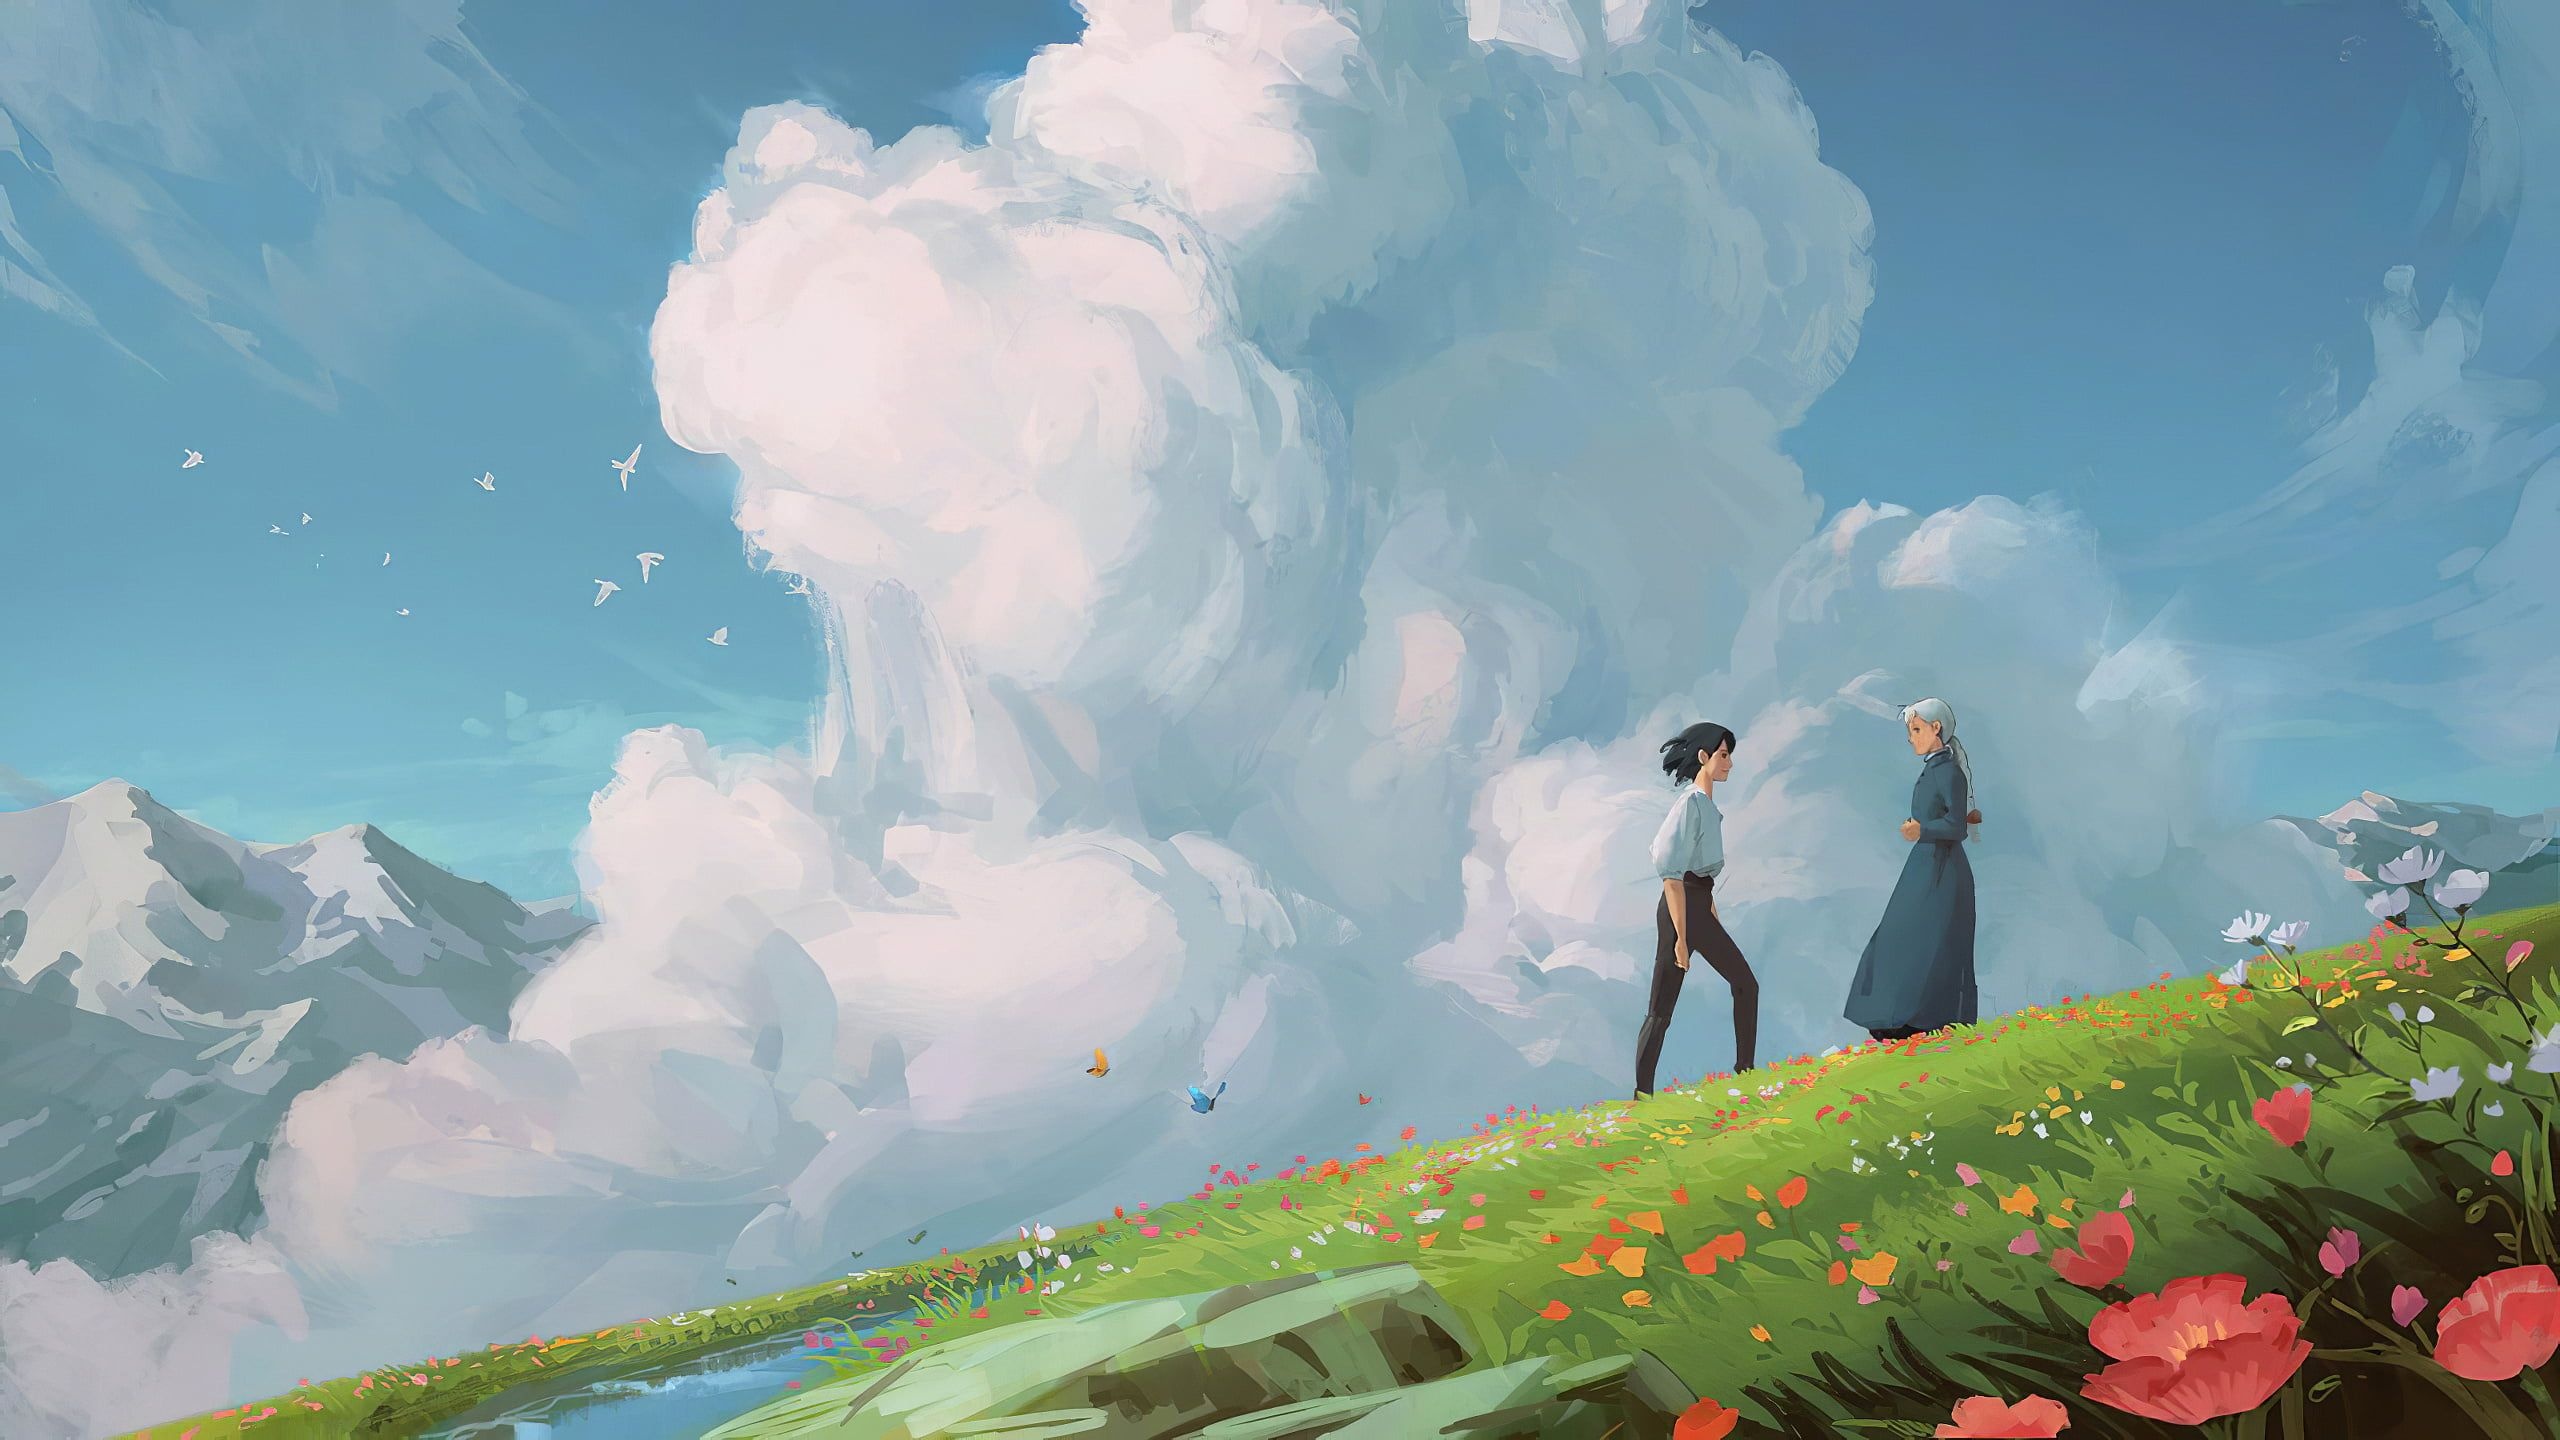 Howl's Moving Castle, Studio Ghibli Art, Fantasy Clouds, Daylight Beauty, 2560x1440 HD Desktop